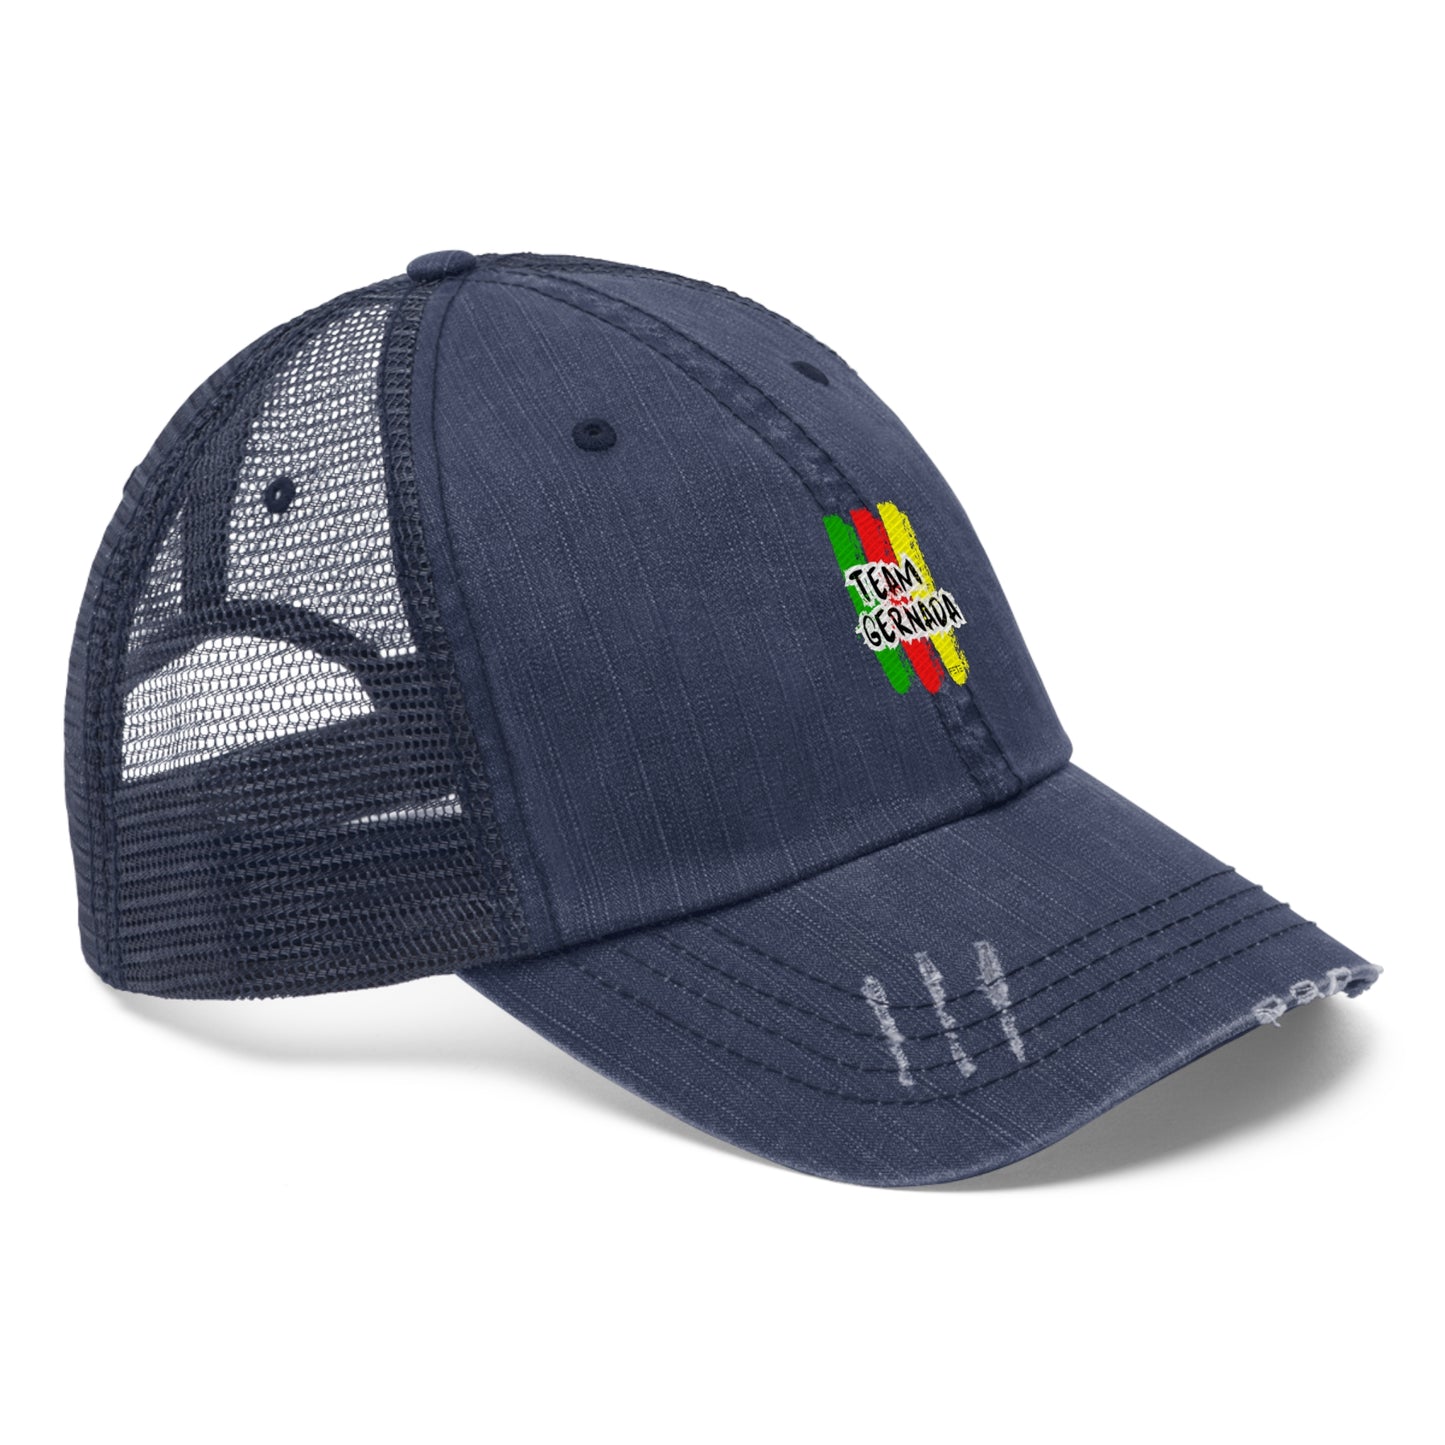 Team Grenada Trucker Hat